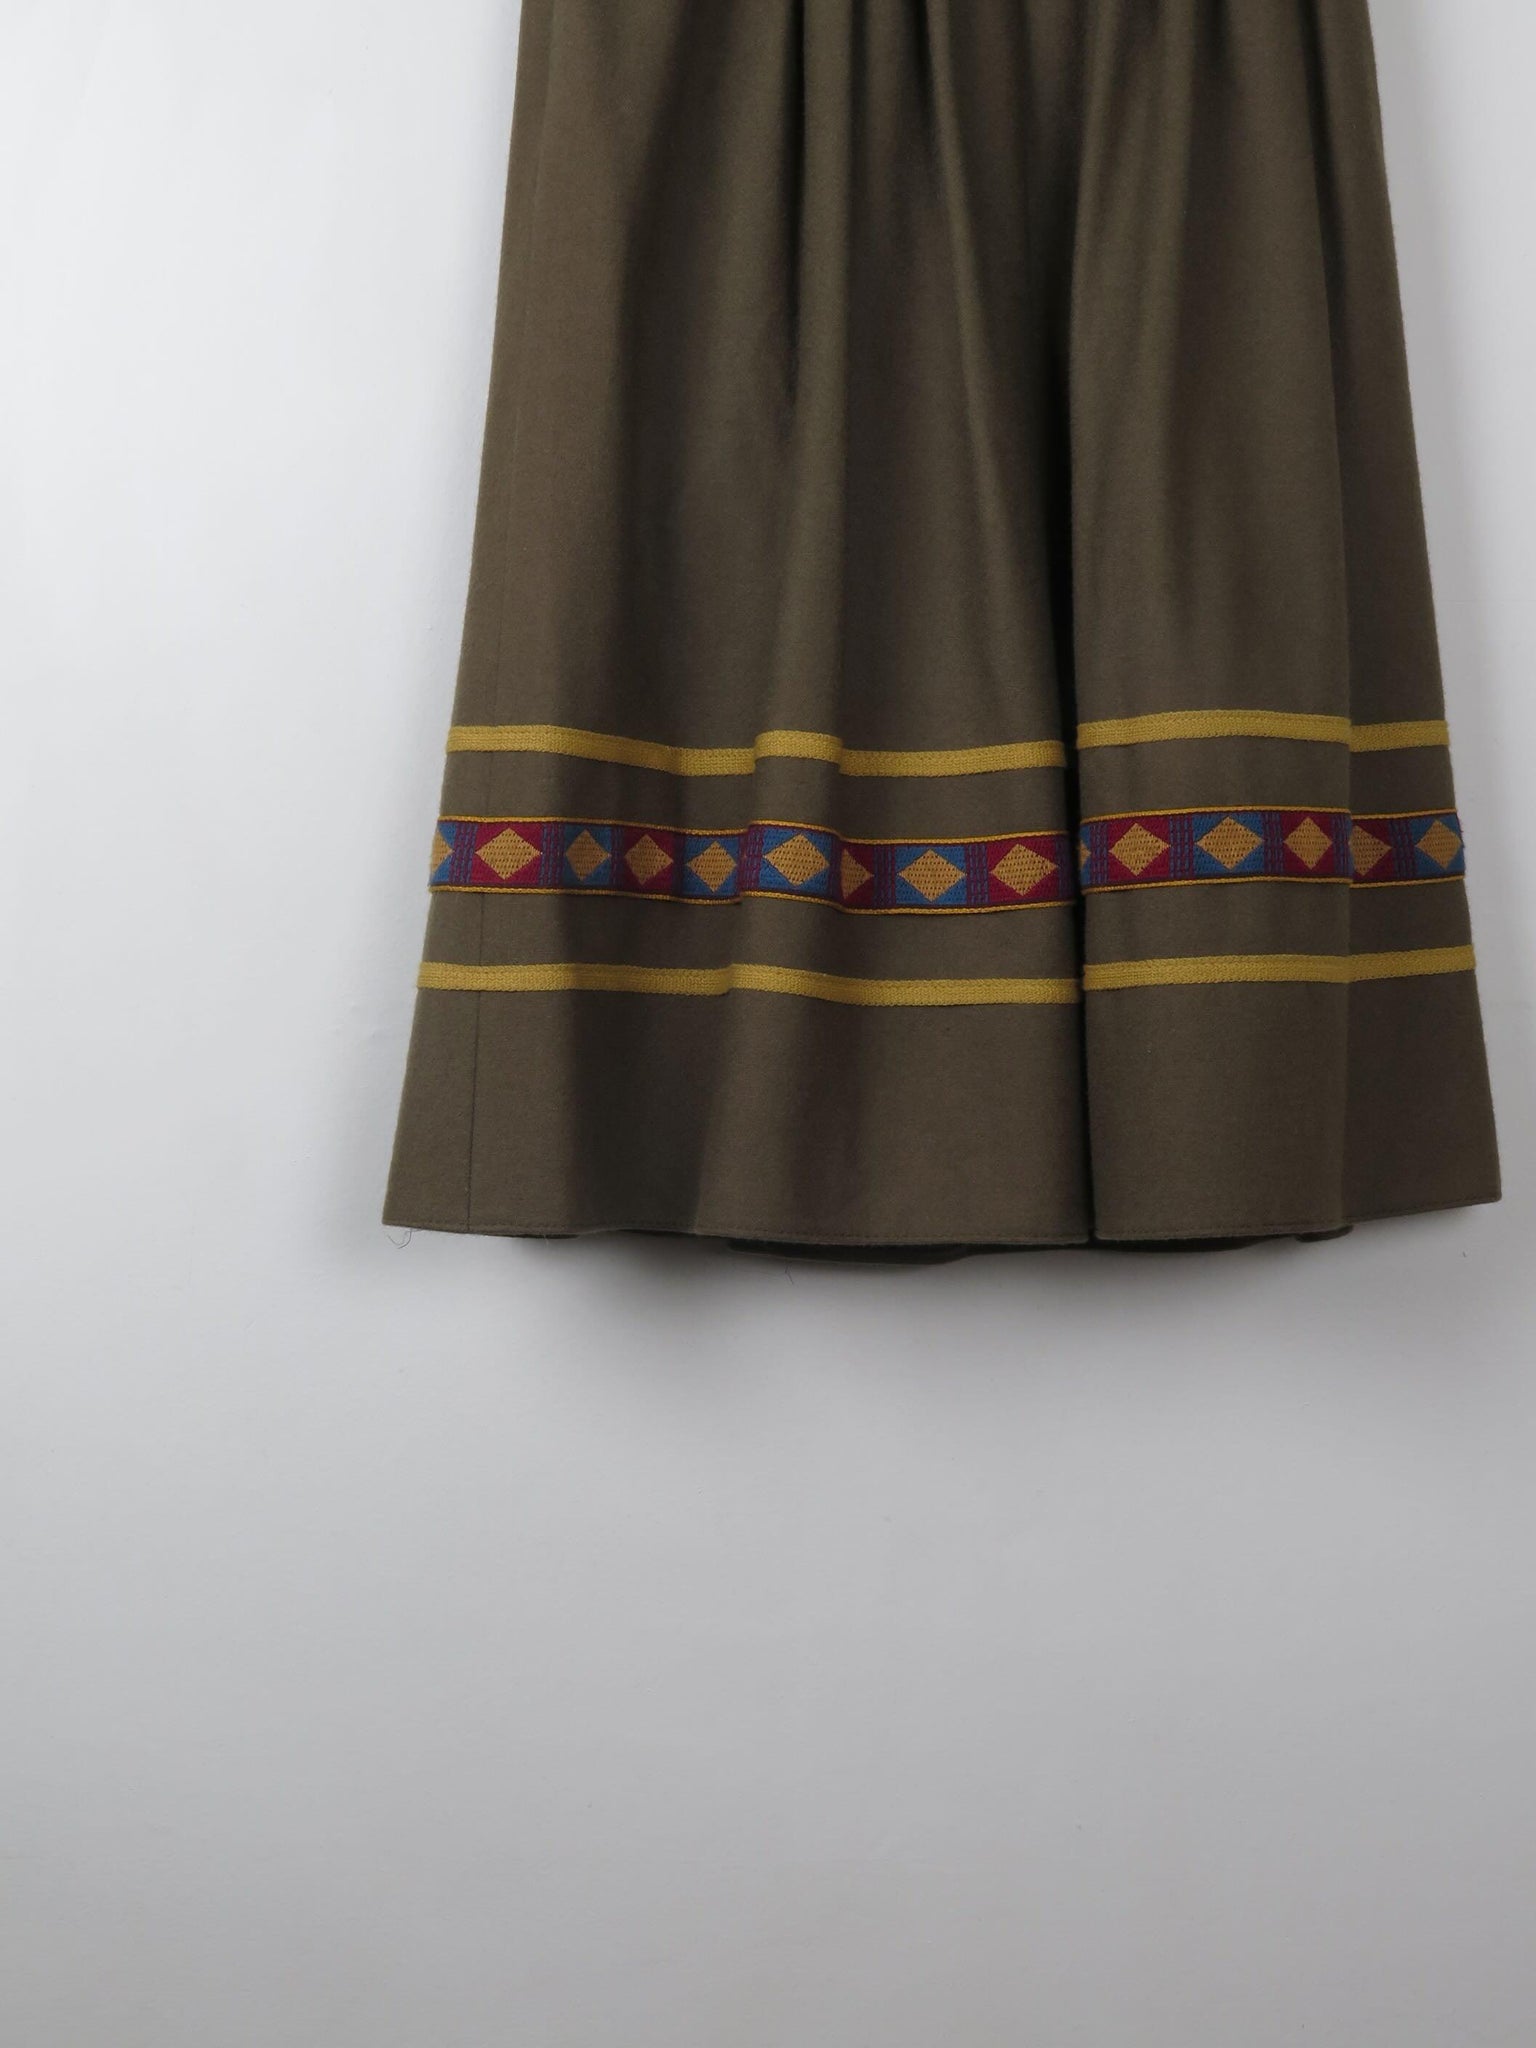 Vintage Green Wool Full Skirt XS - The Harlequin